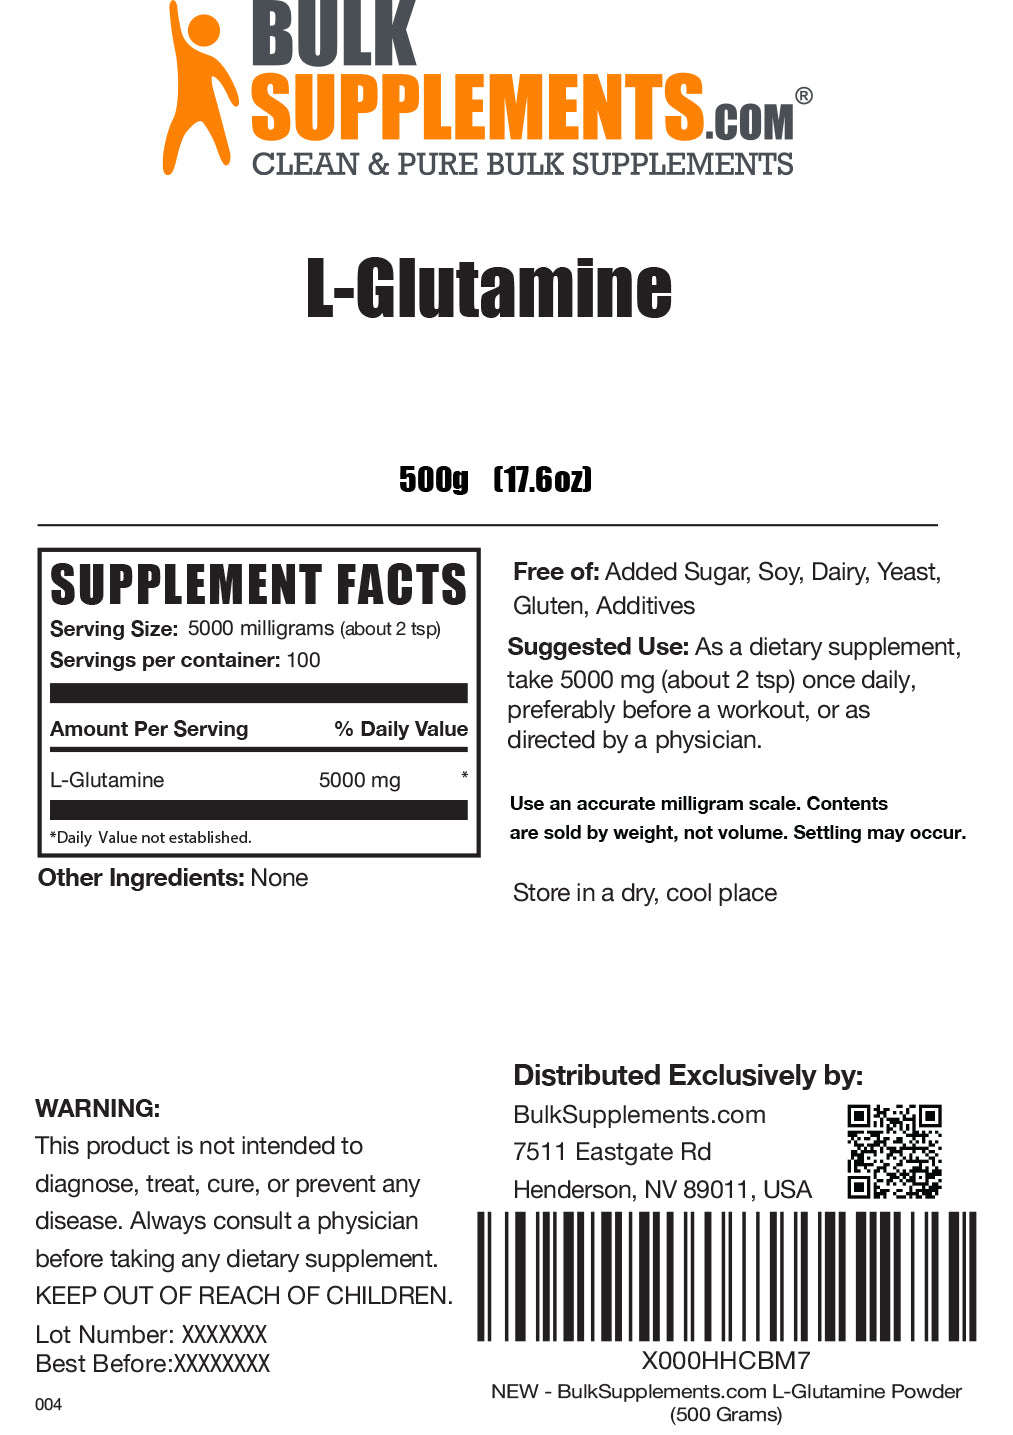 L-glutamine powder label 500g